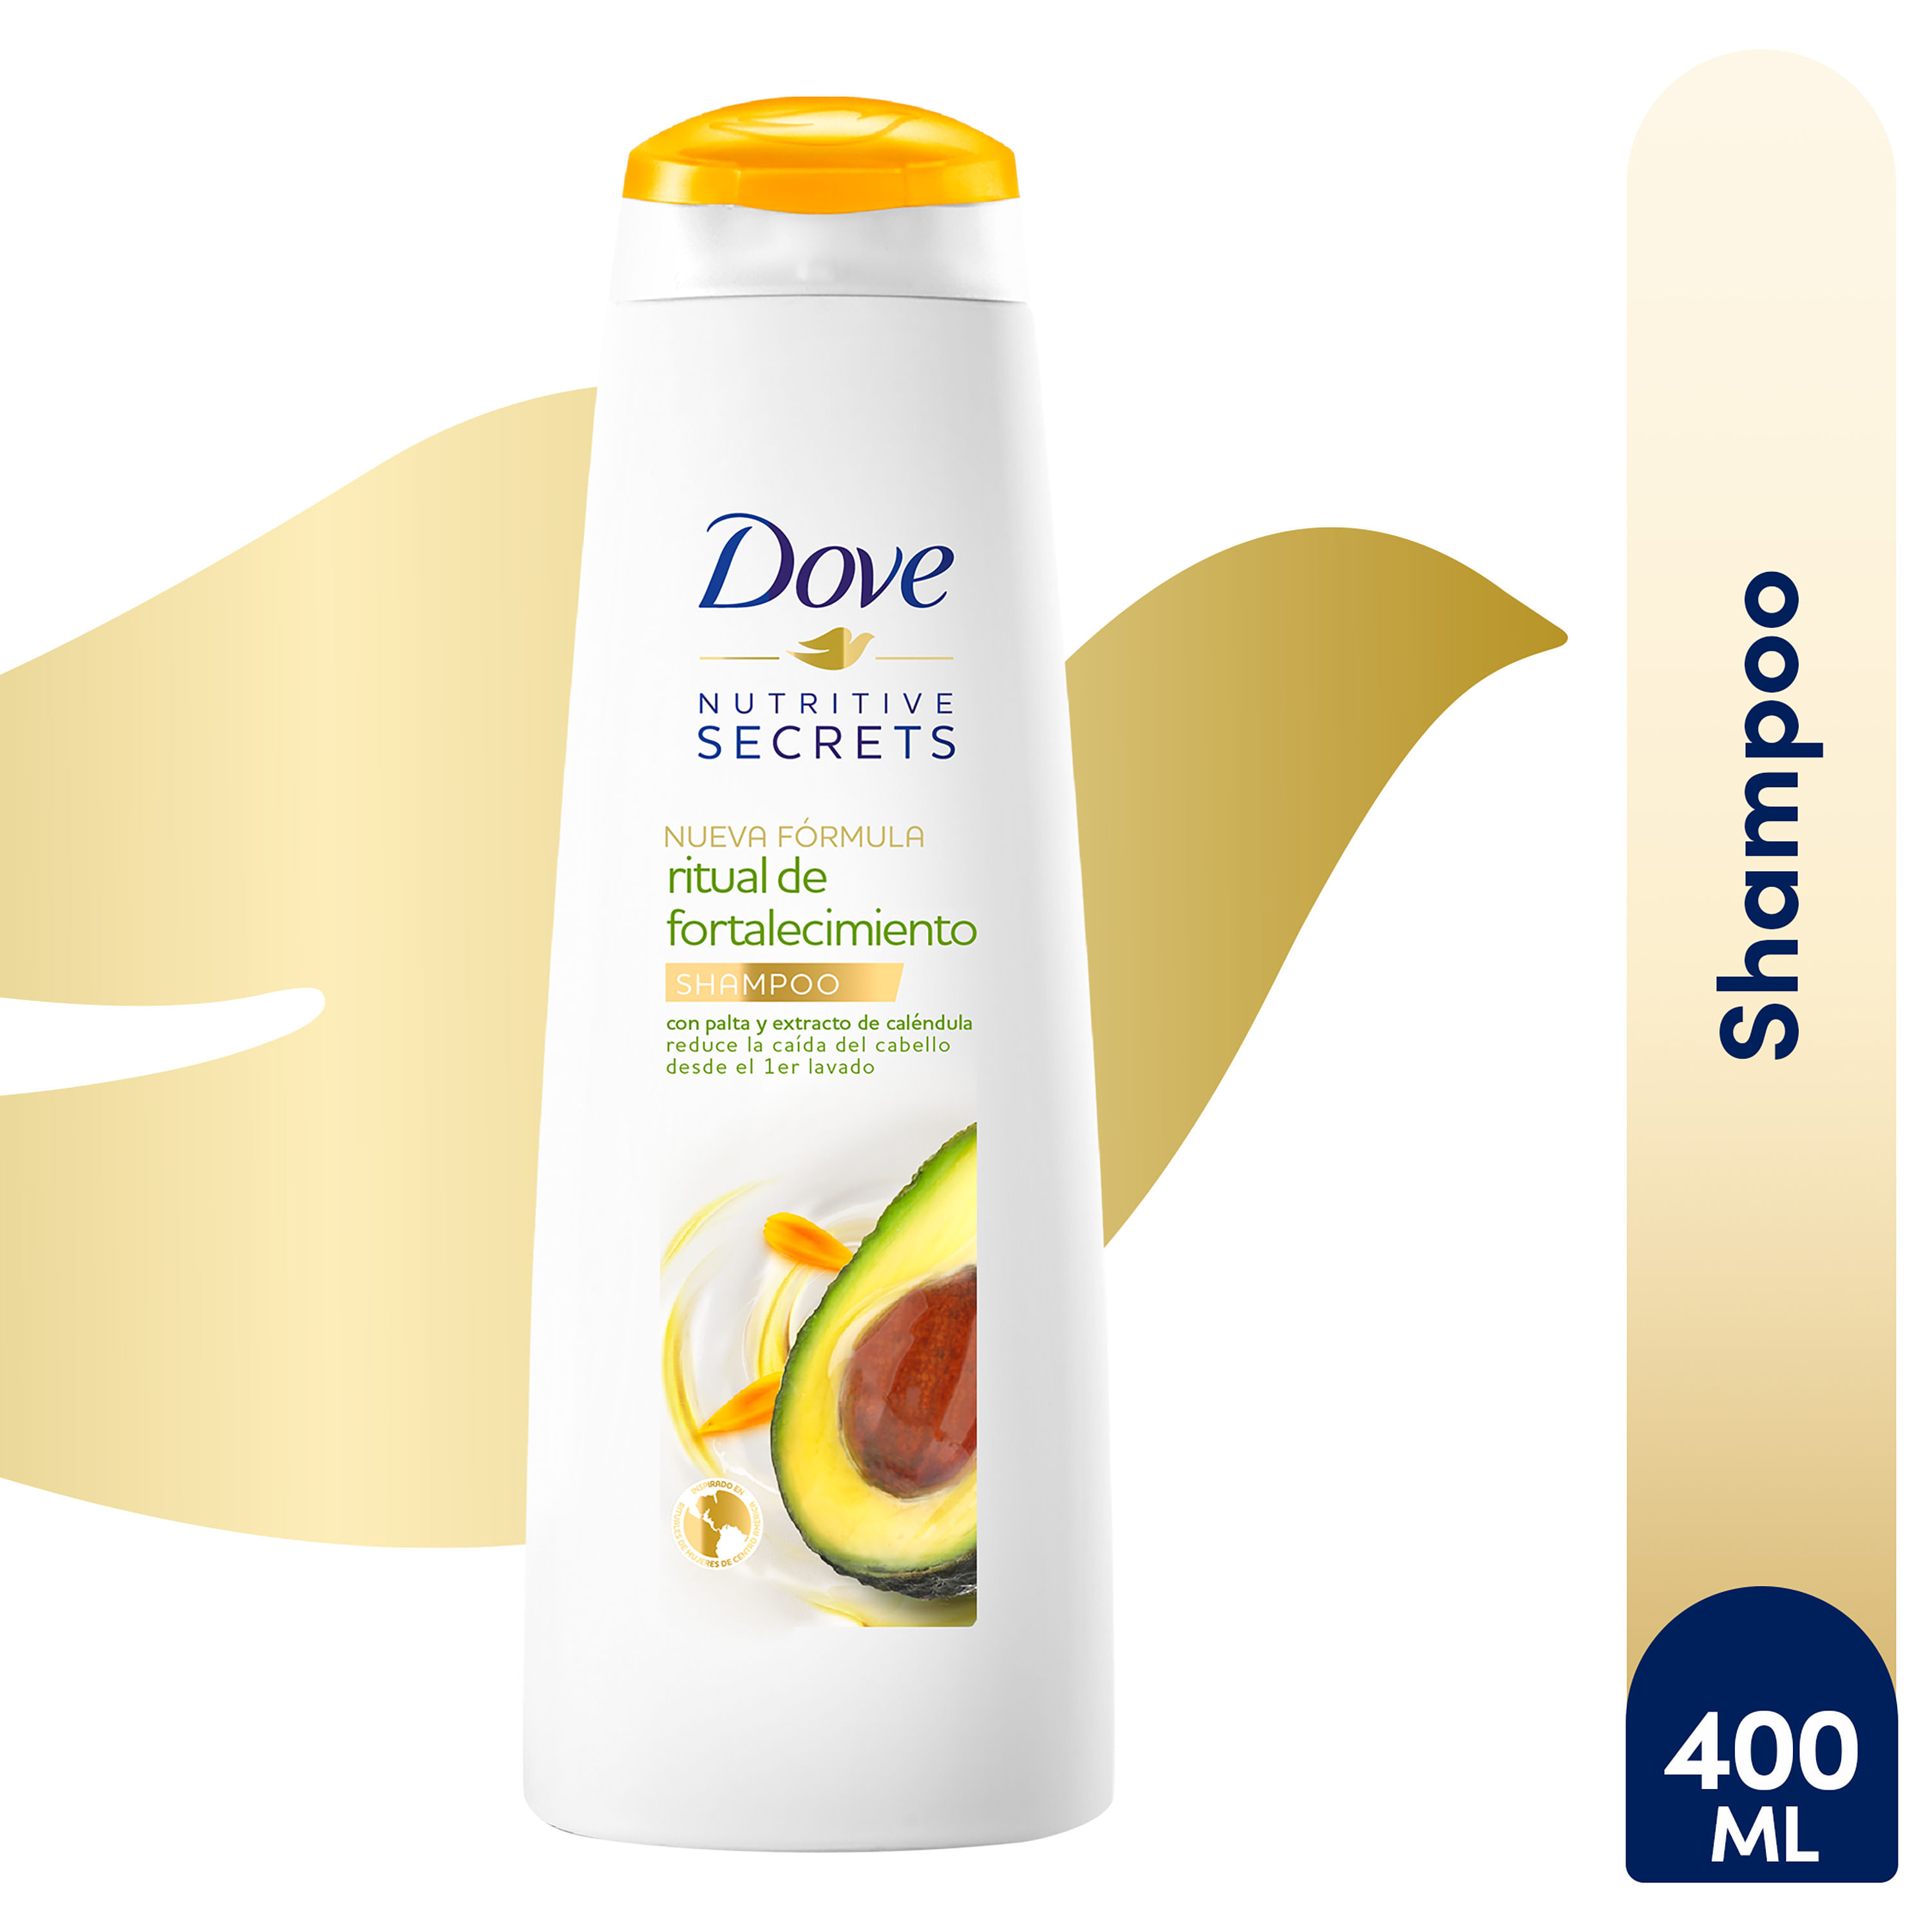 Shampoo-Dove-Fortalecimiento-Con-Palta-Y-Extracto-De-Cal-ndula-400ml-1-69340